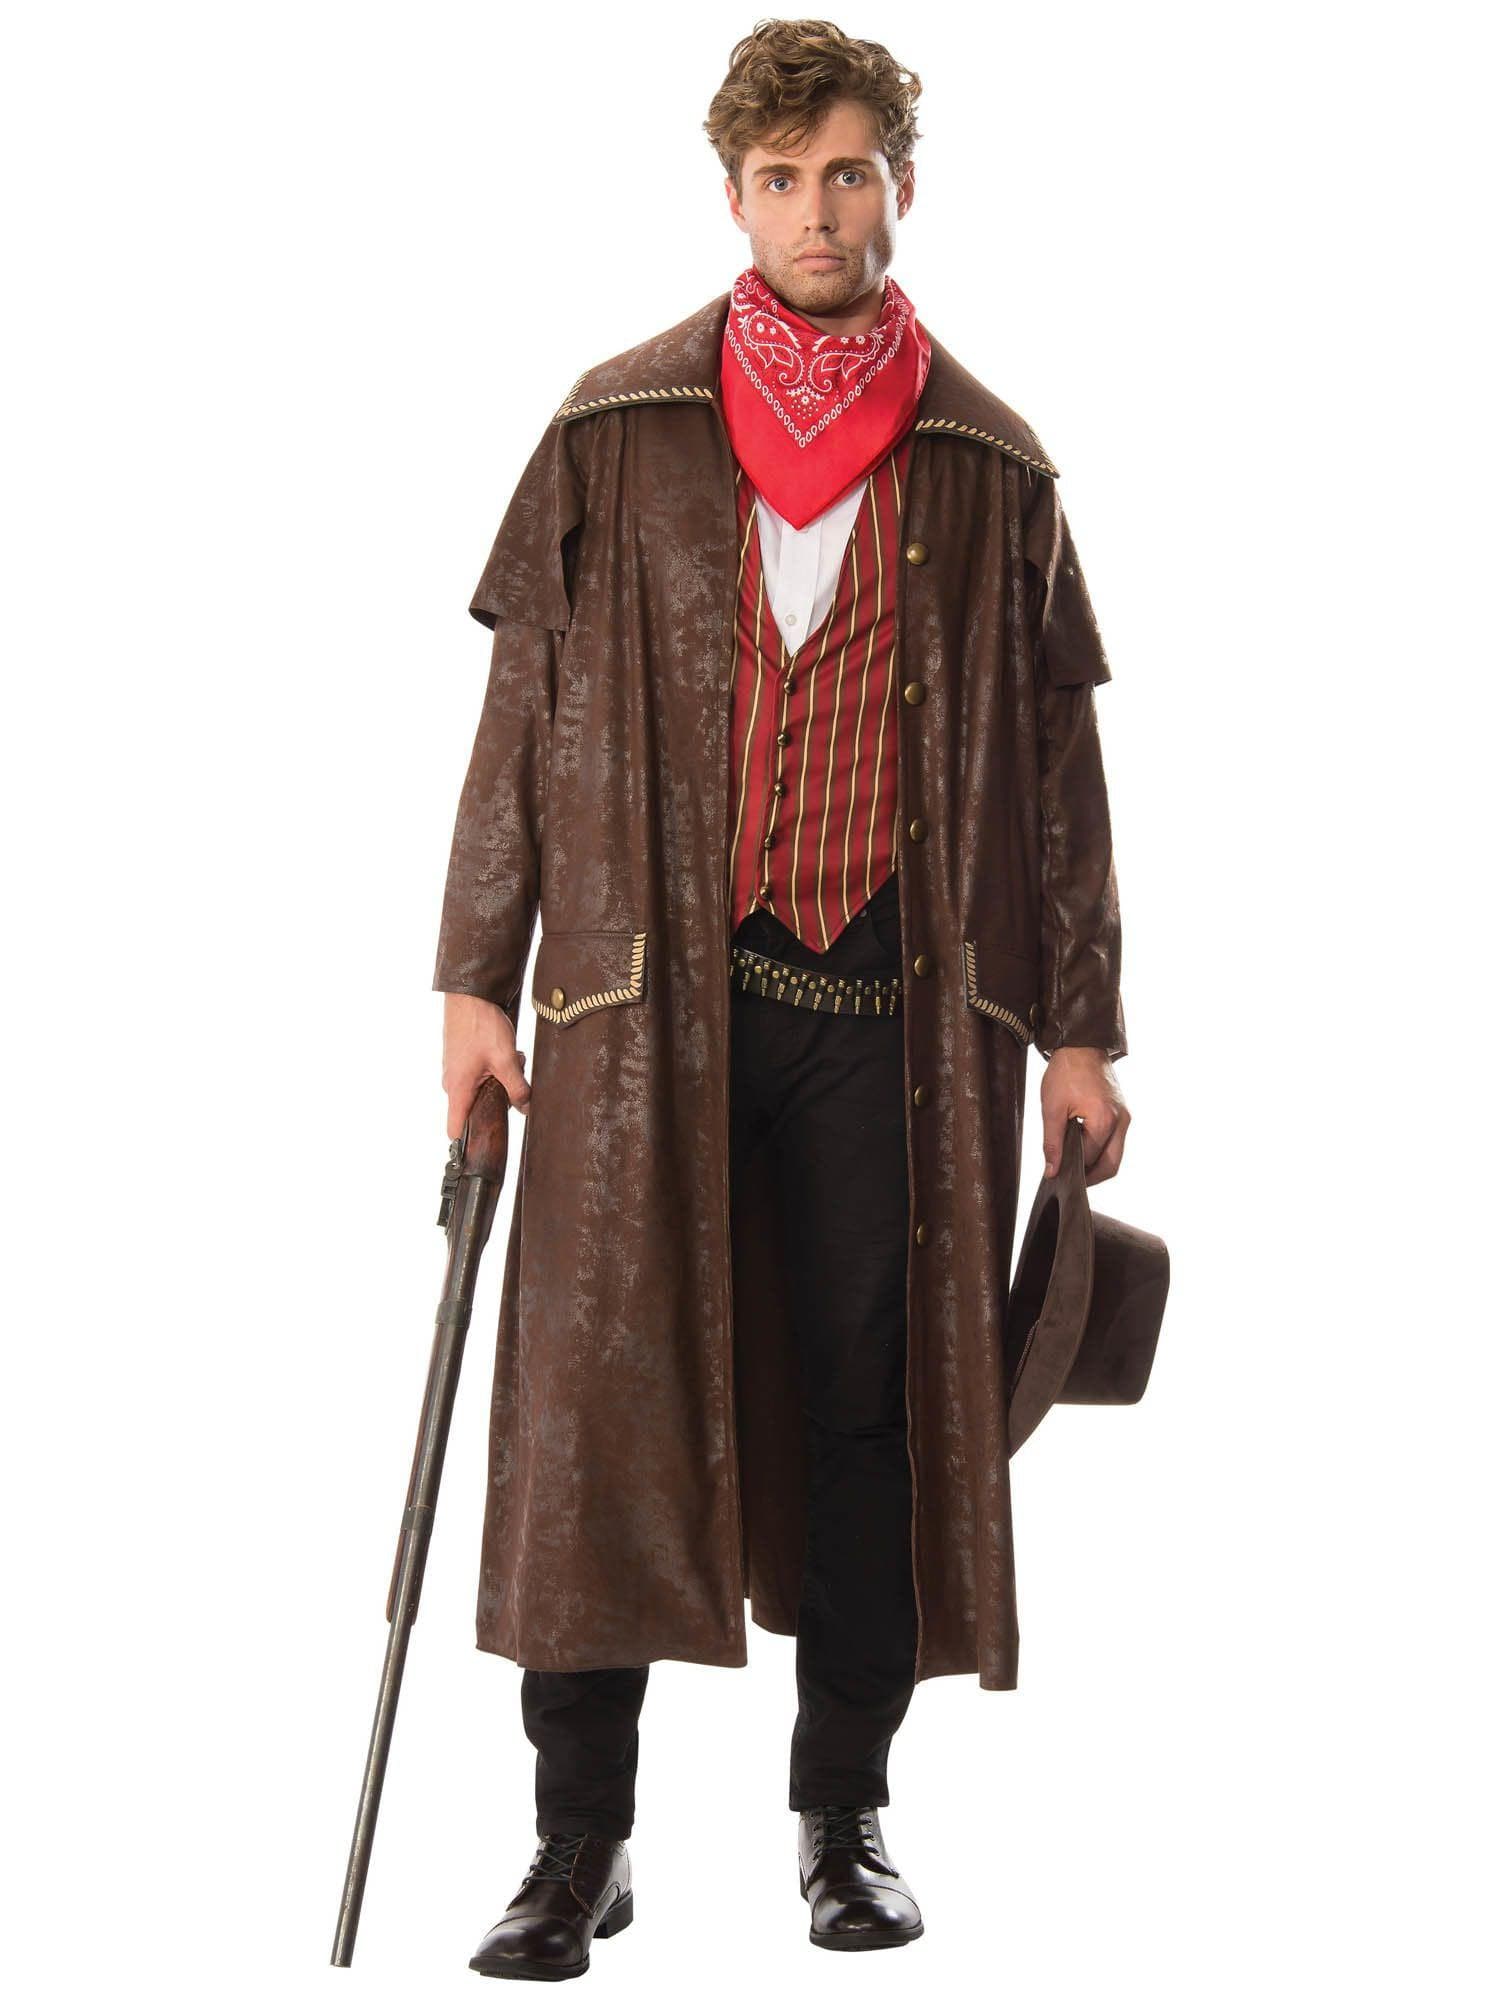 Adult Cowboy Costume - costumes.com